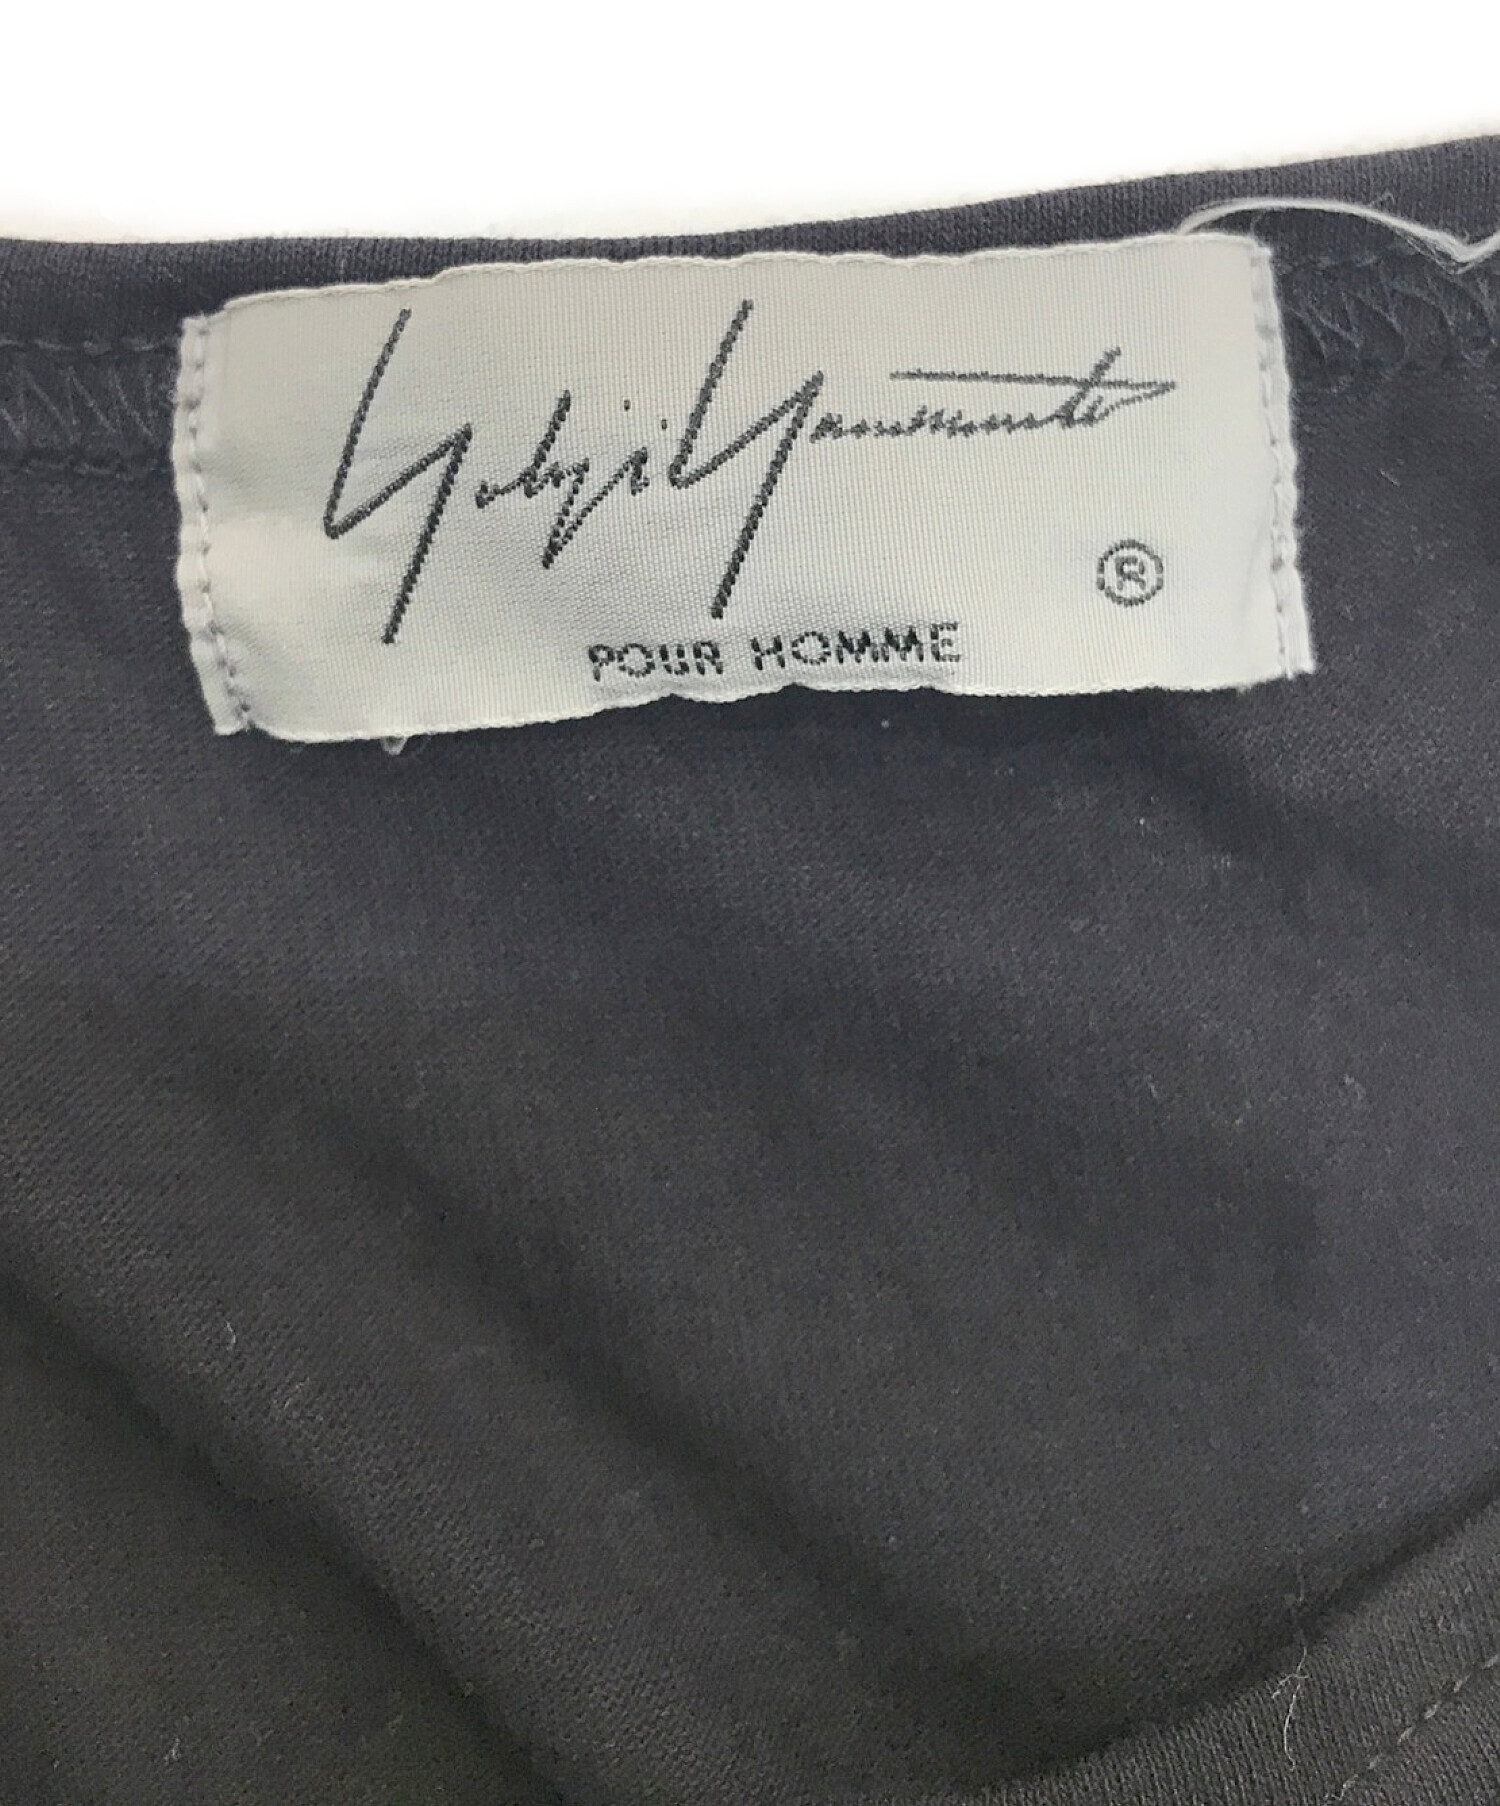 Yohji Yamamoto pour homme (ヨウジヤマモト プールオム) デザインプリントカットソー　HW-T28-273　着る服ないの  18SS ブラック サイズ:3